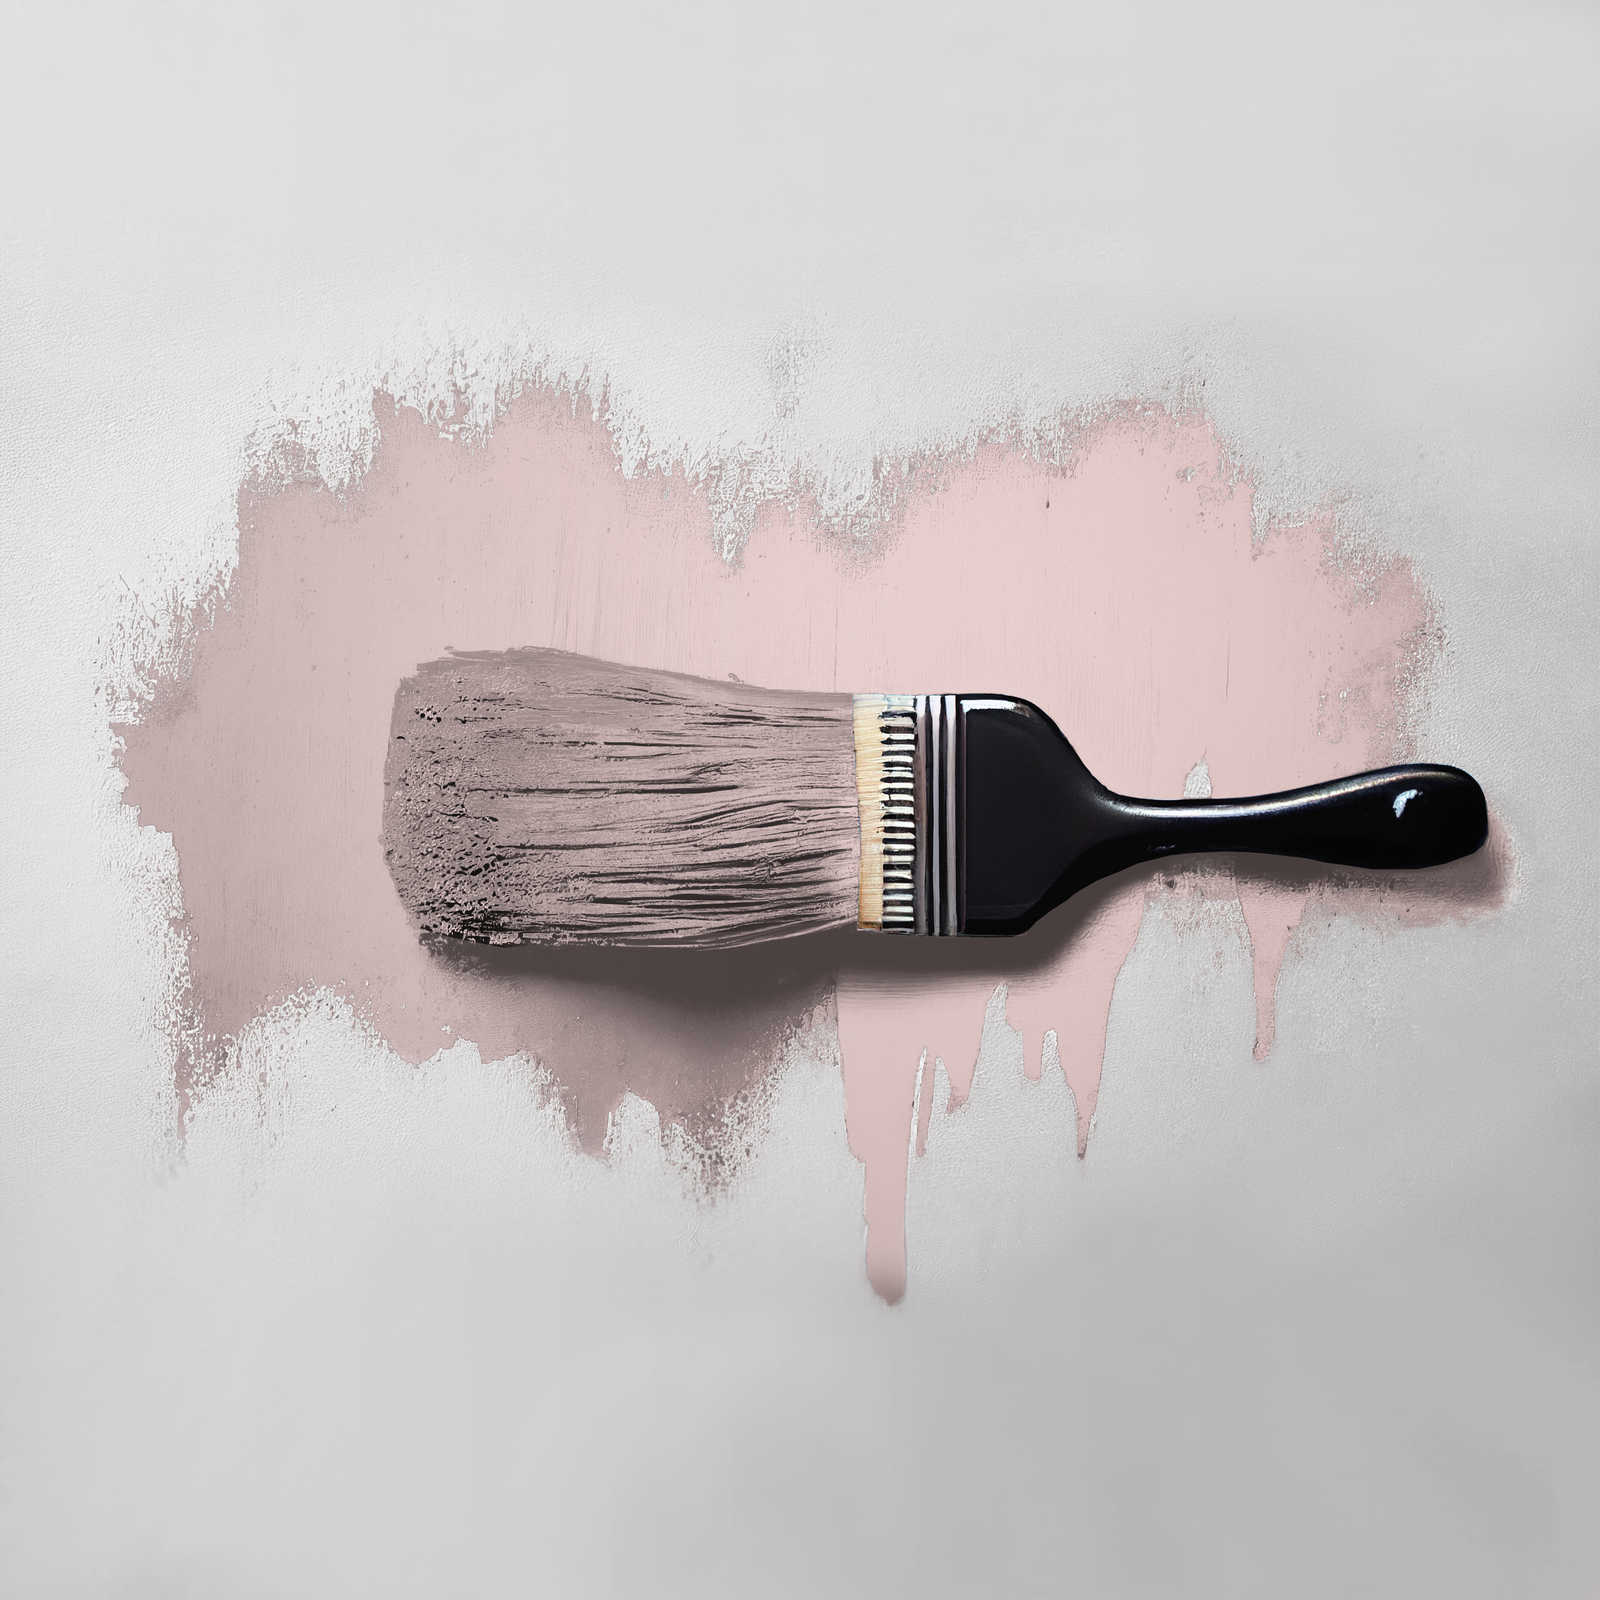             Pittura murale TCK7008 »Cute Cupcake« in rosa delicato – 2,5 litri
        